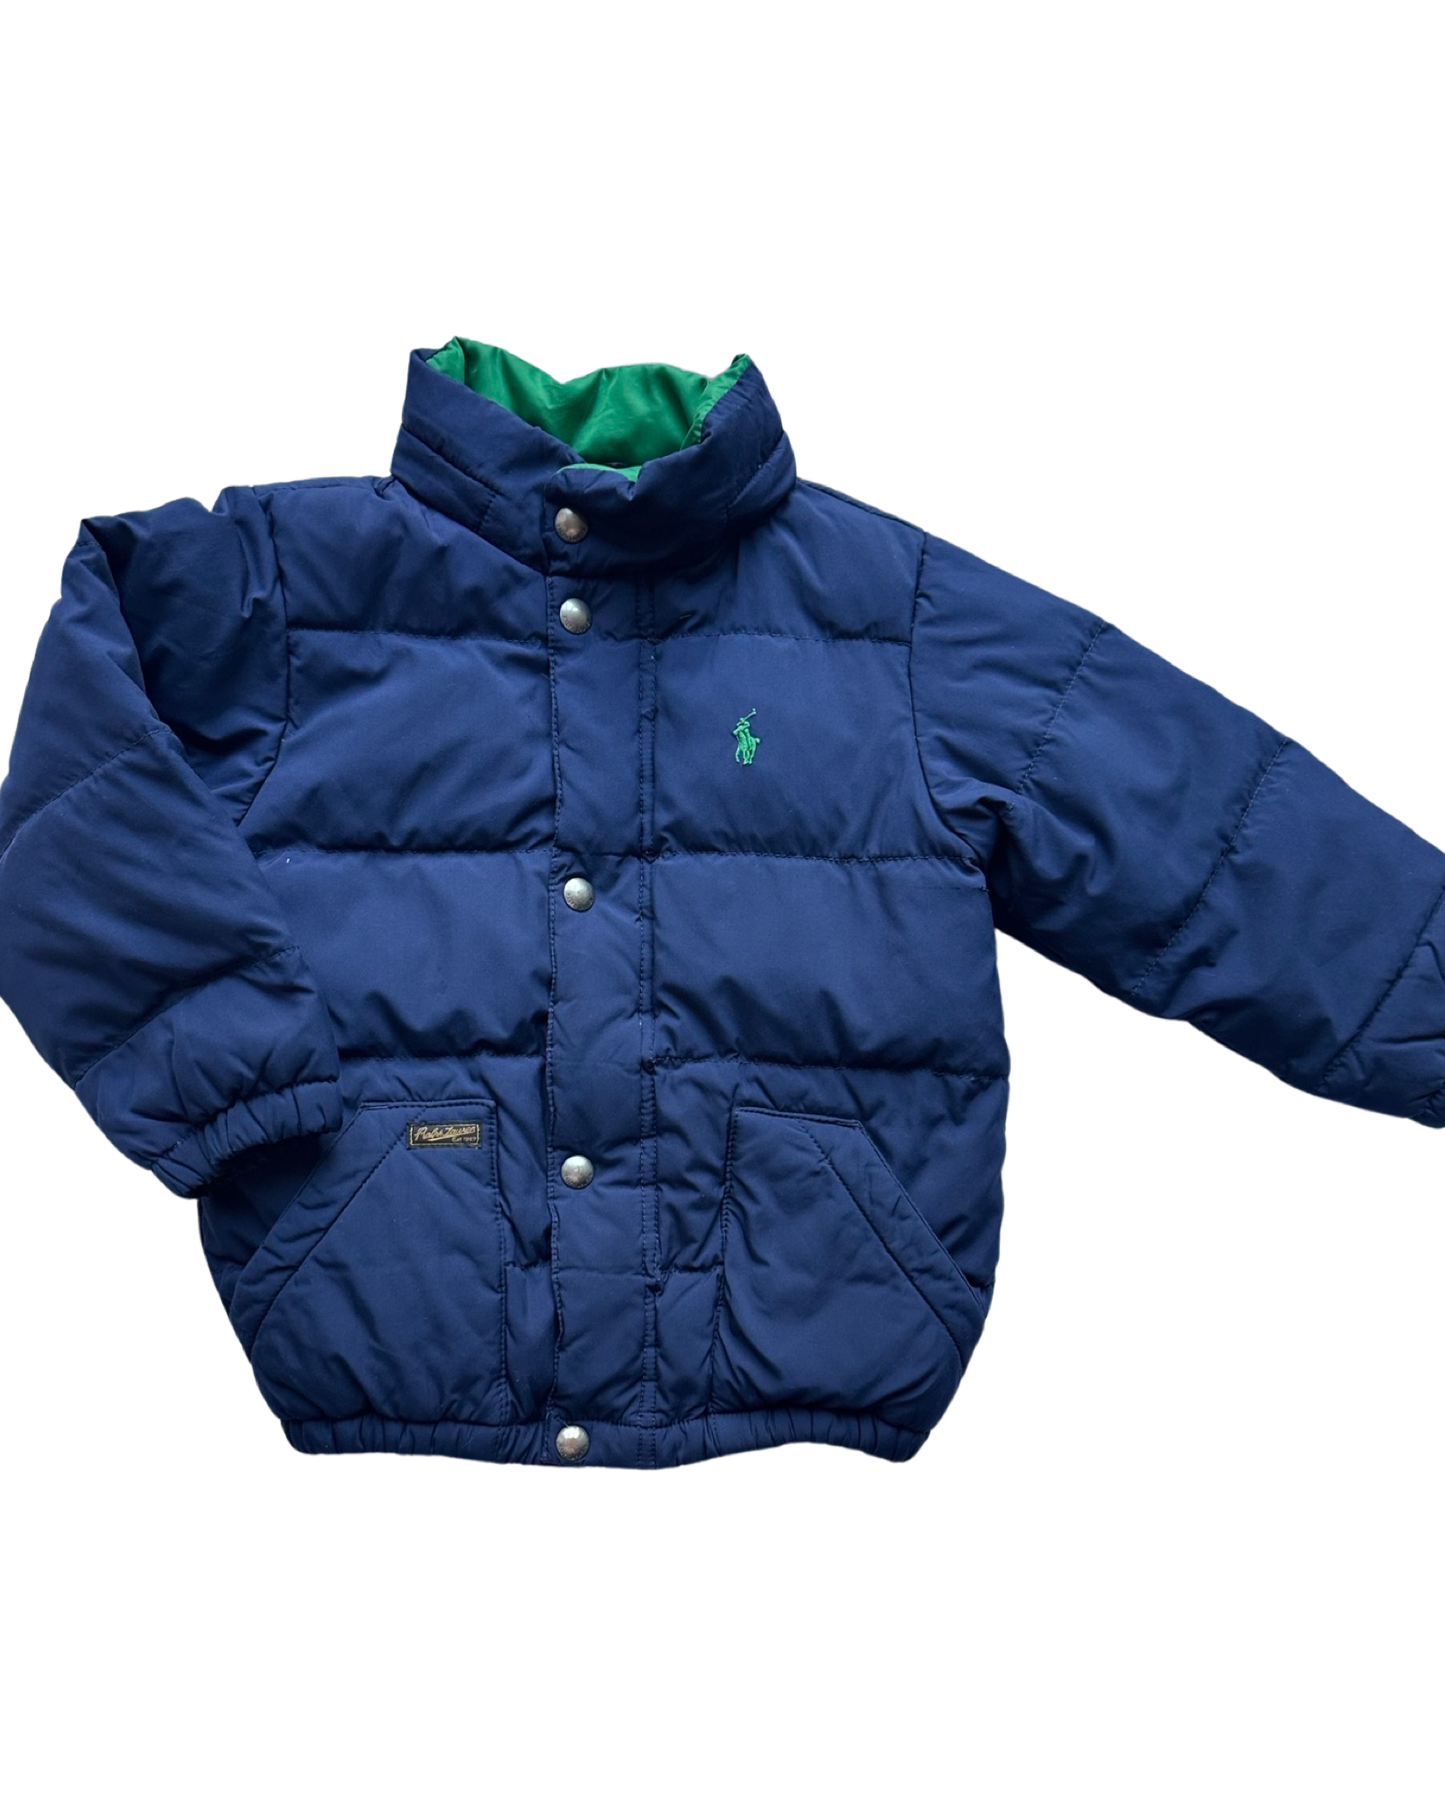 Ralph Lauren navy puffer jacket (size 3-4yrs)